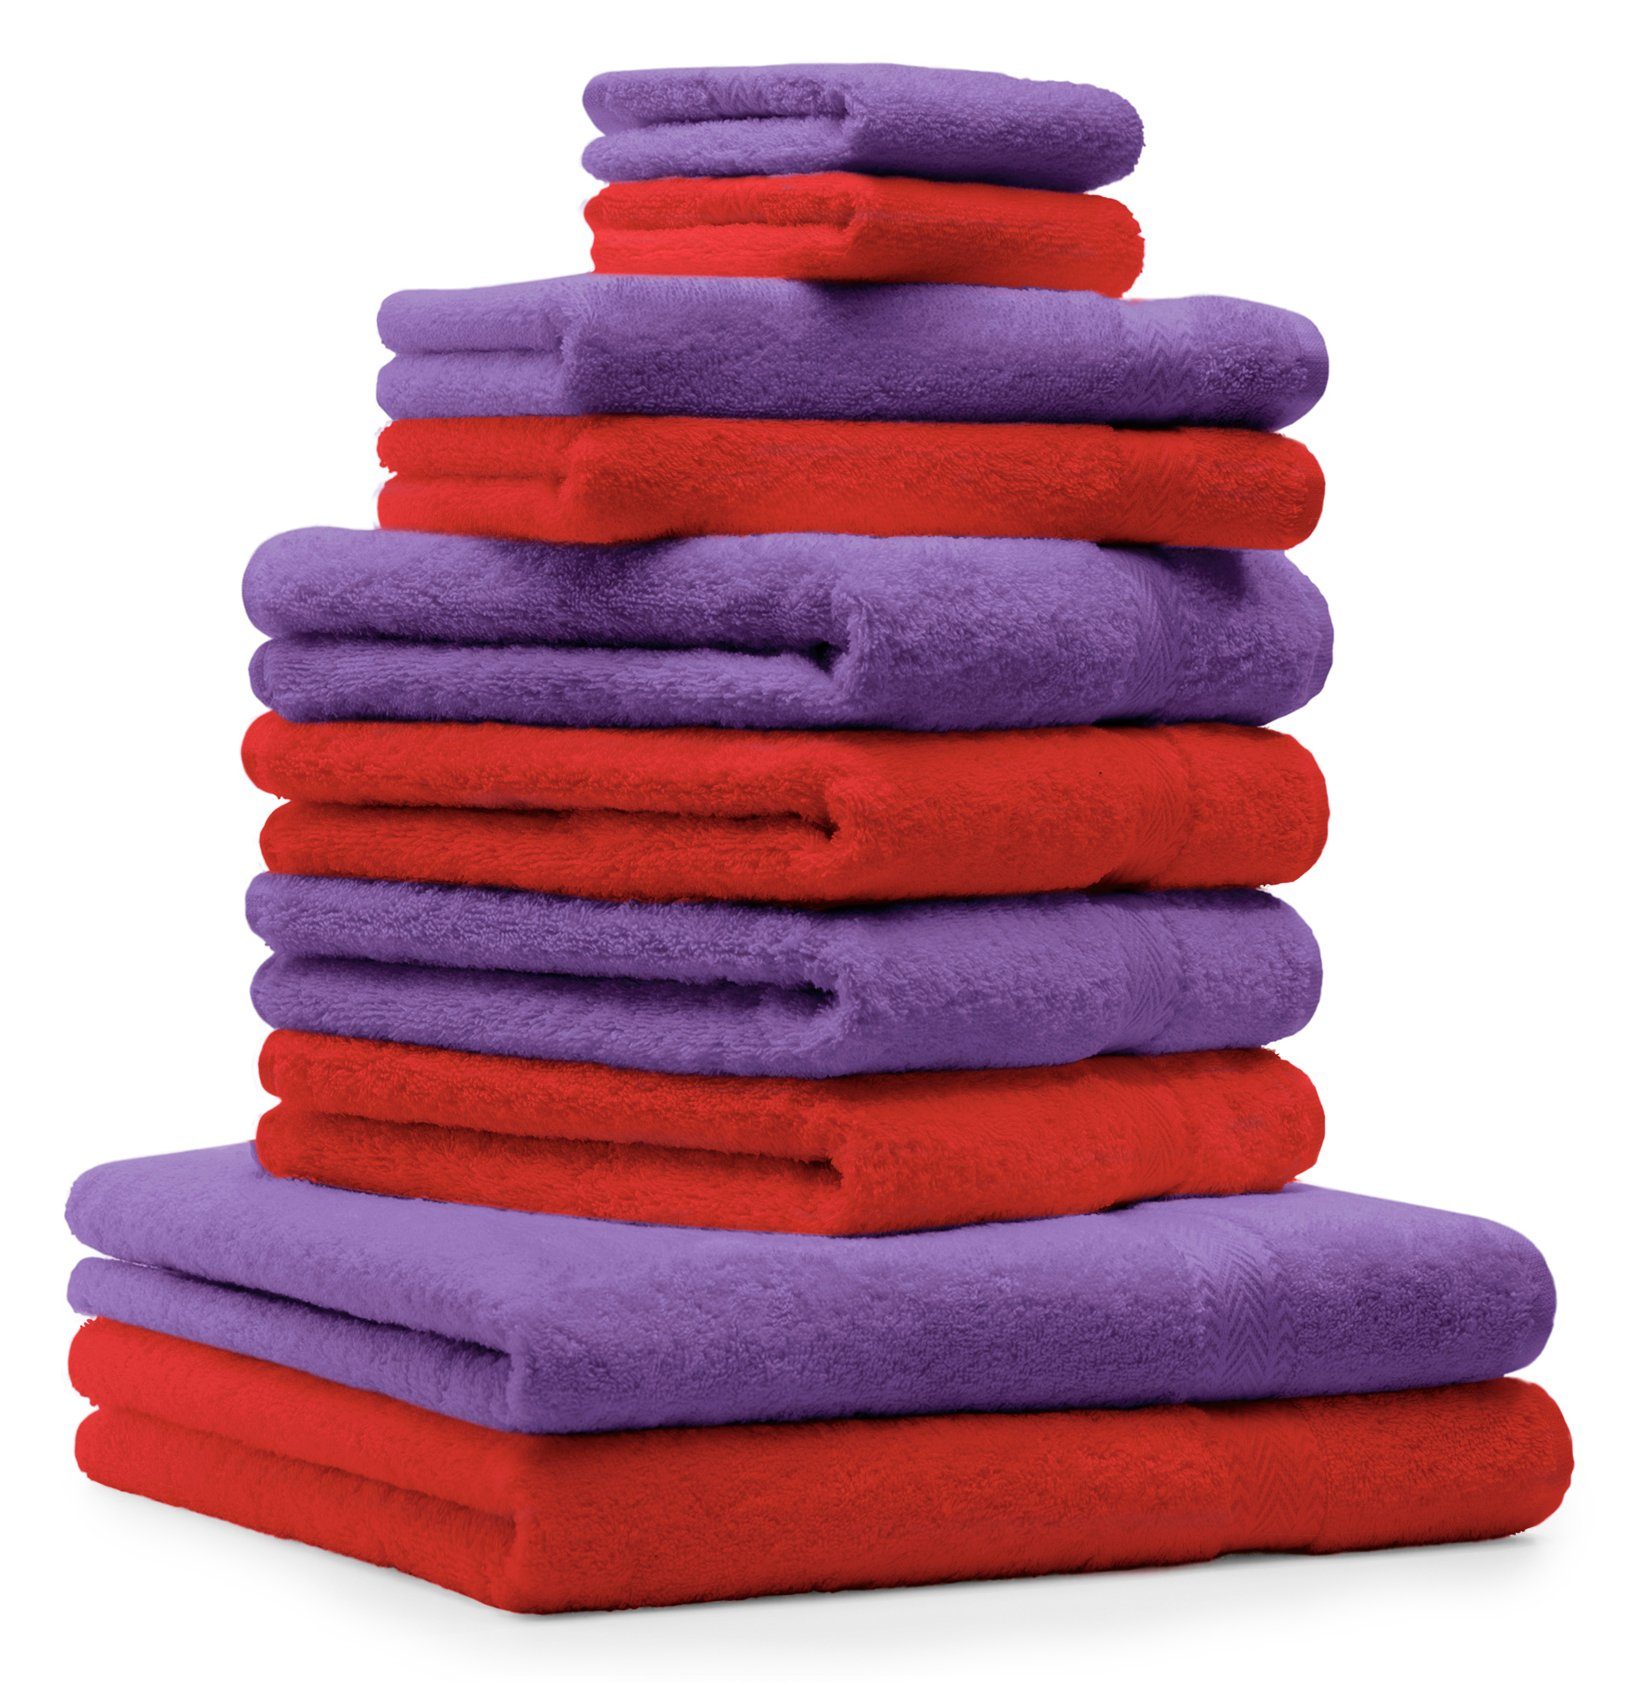 Betz Handtuch Set 10-TLG. Handtuch-Set CLASSIC Farbe rot und lila, 100% Baumwolle